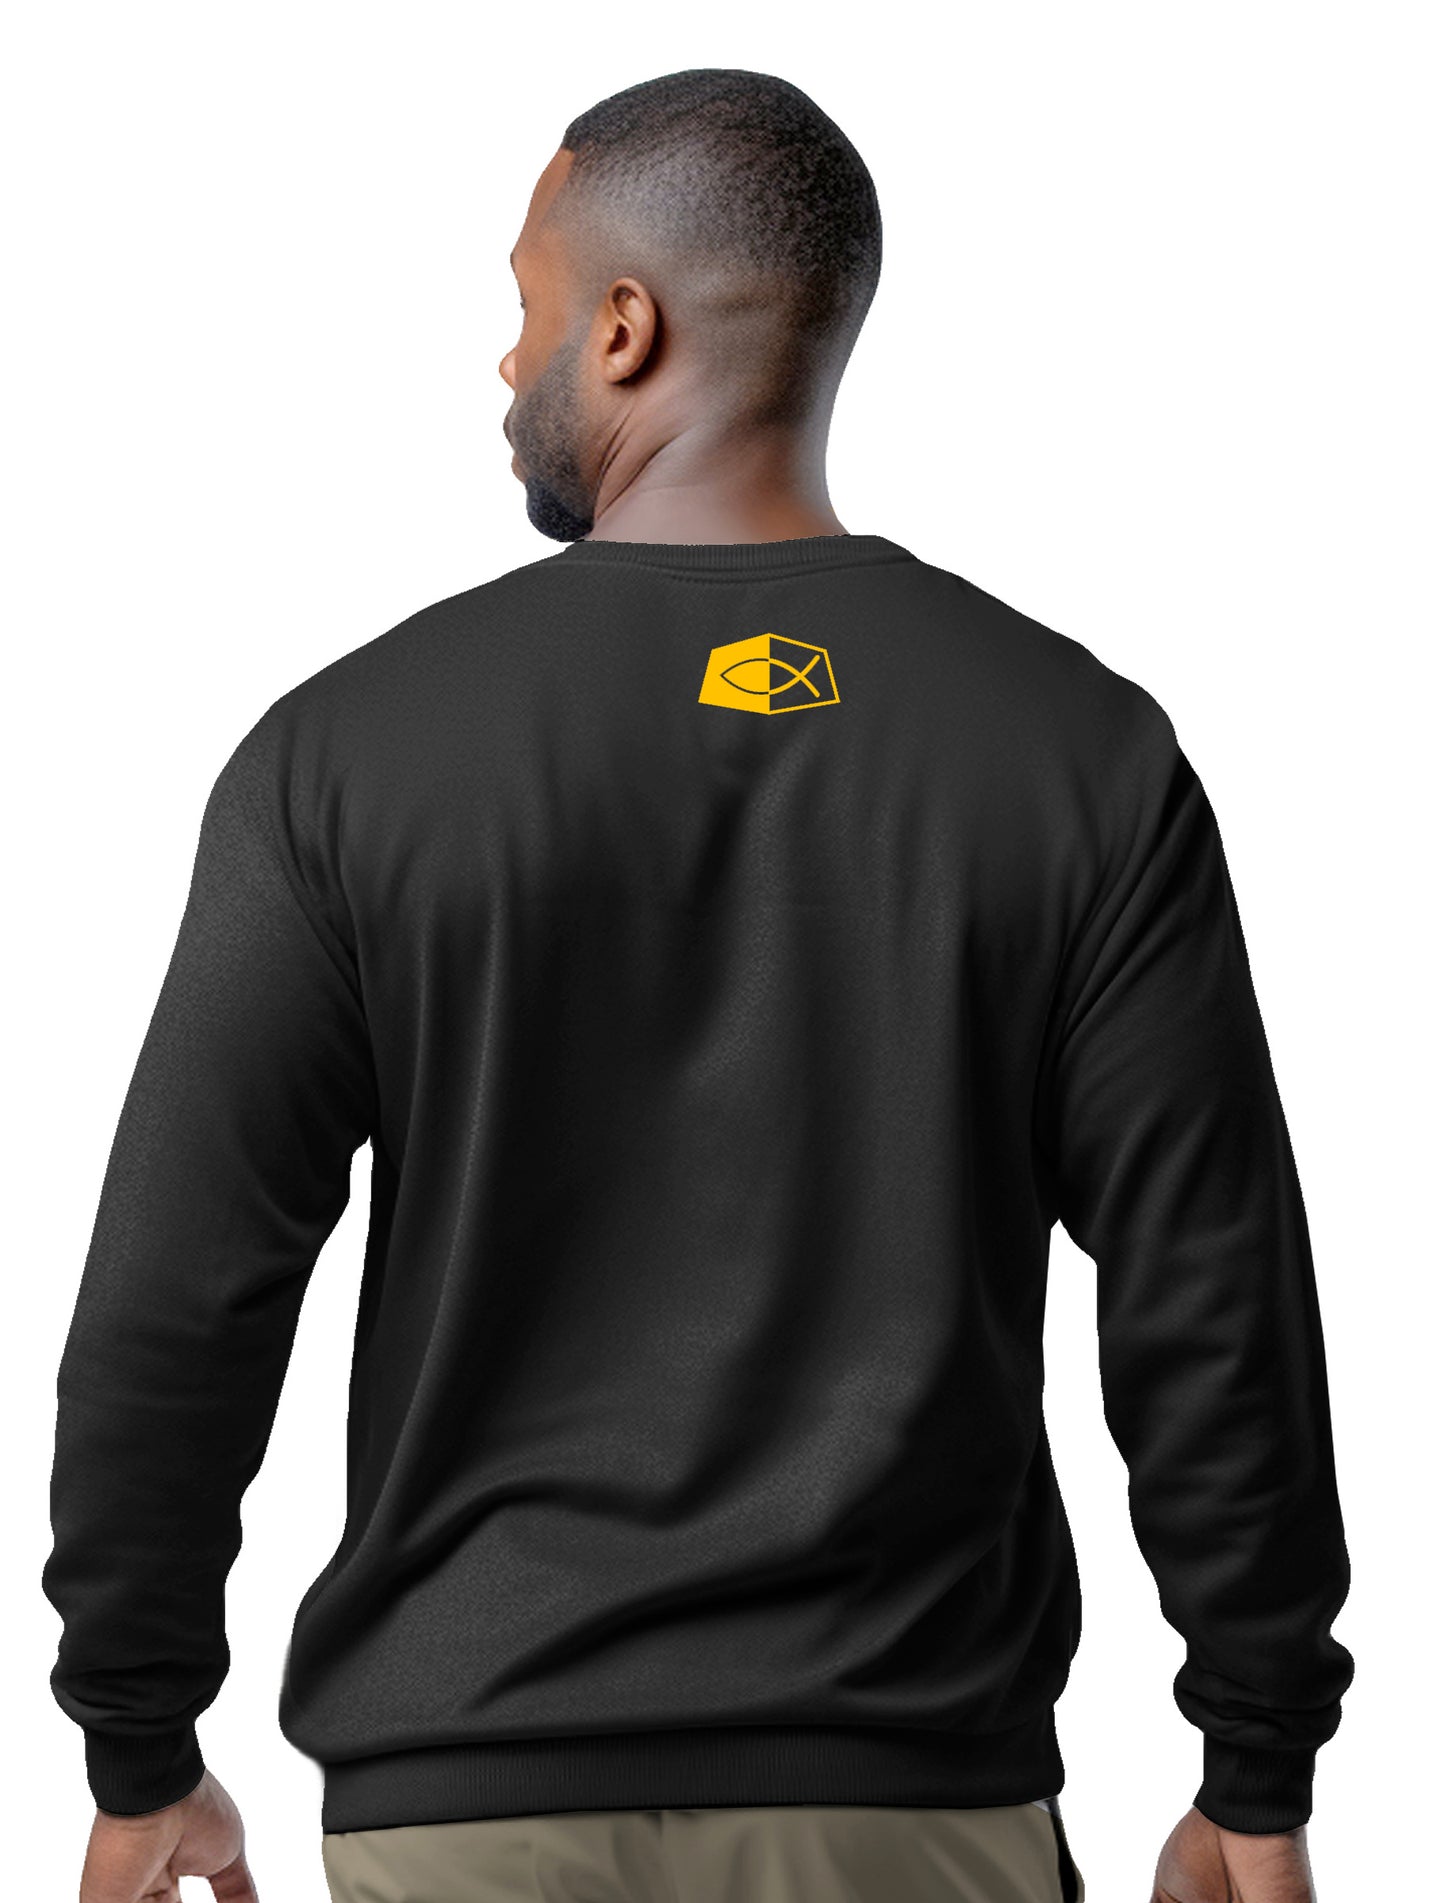 ARMED WITH GRACE- Men's premium sweatshirt